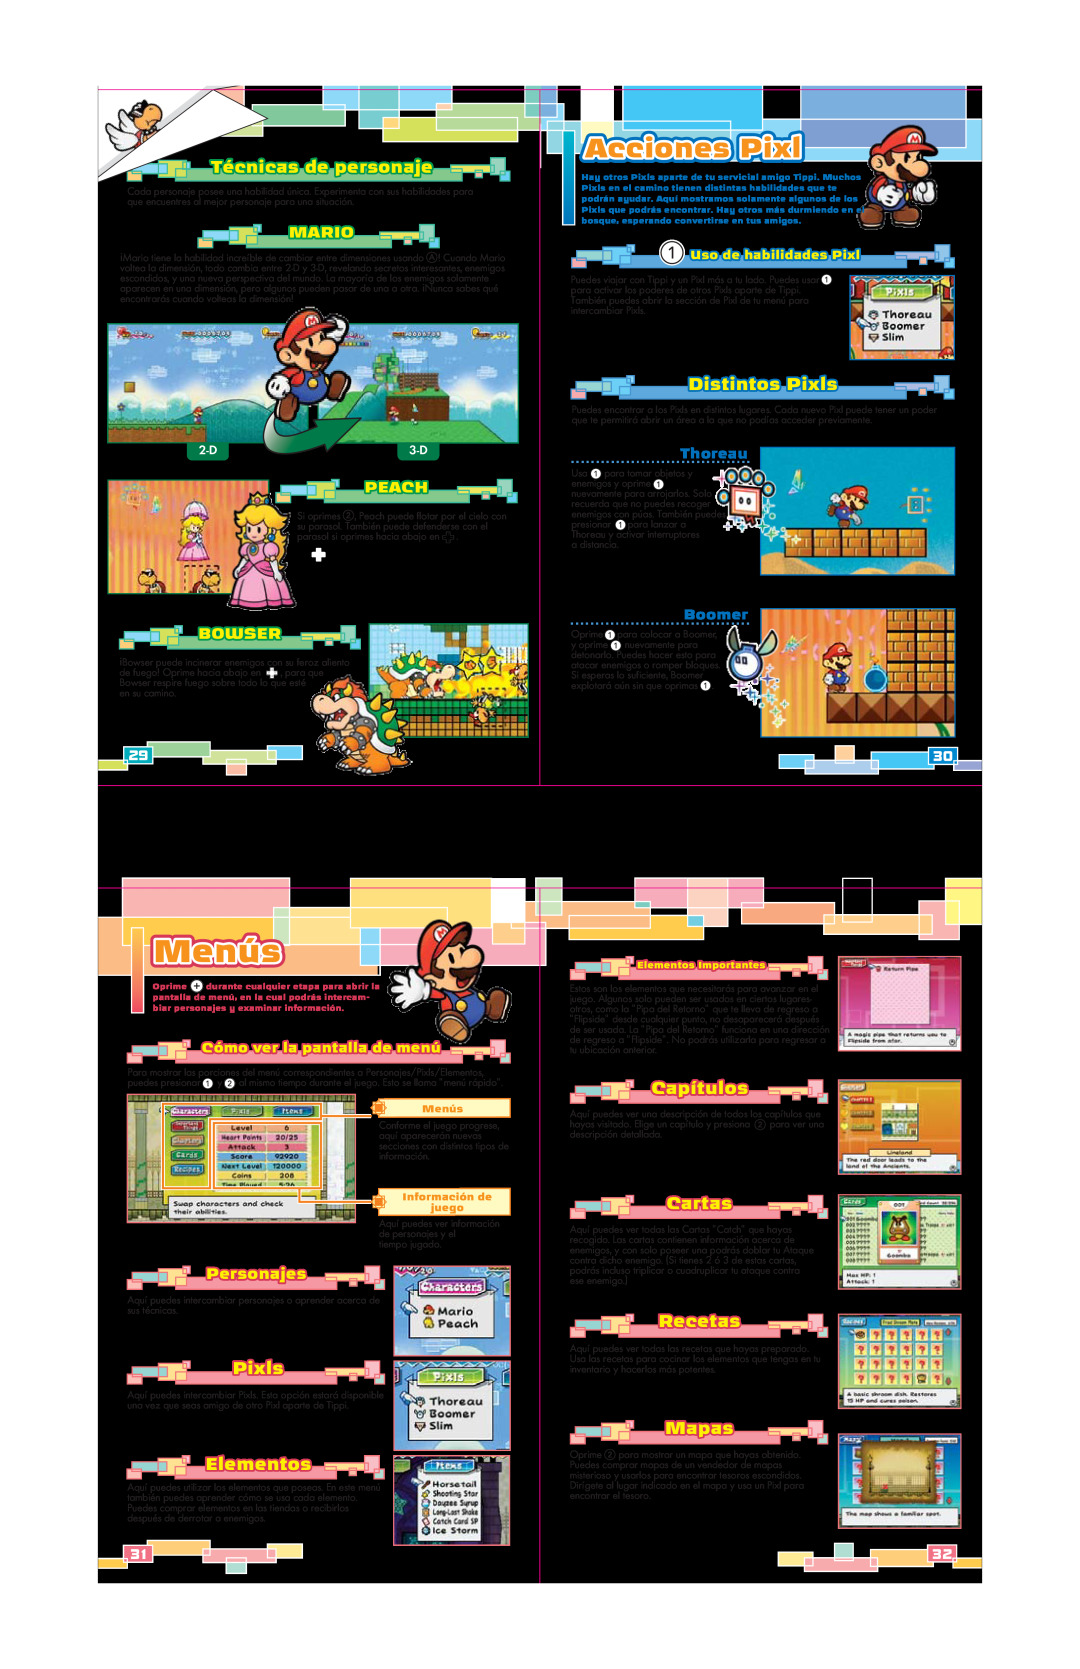 Nintendo 45496902629 Menús, Acciones Pixl, Distintos Pixls, Elementos, Técnicas de personaje, Mapas, Capítulos, Cartas 